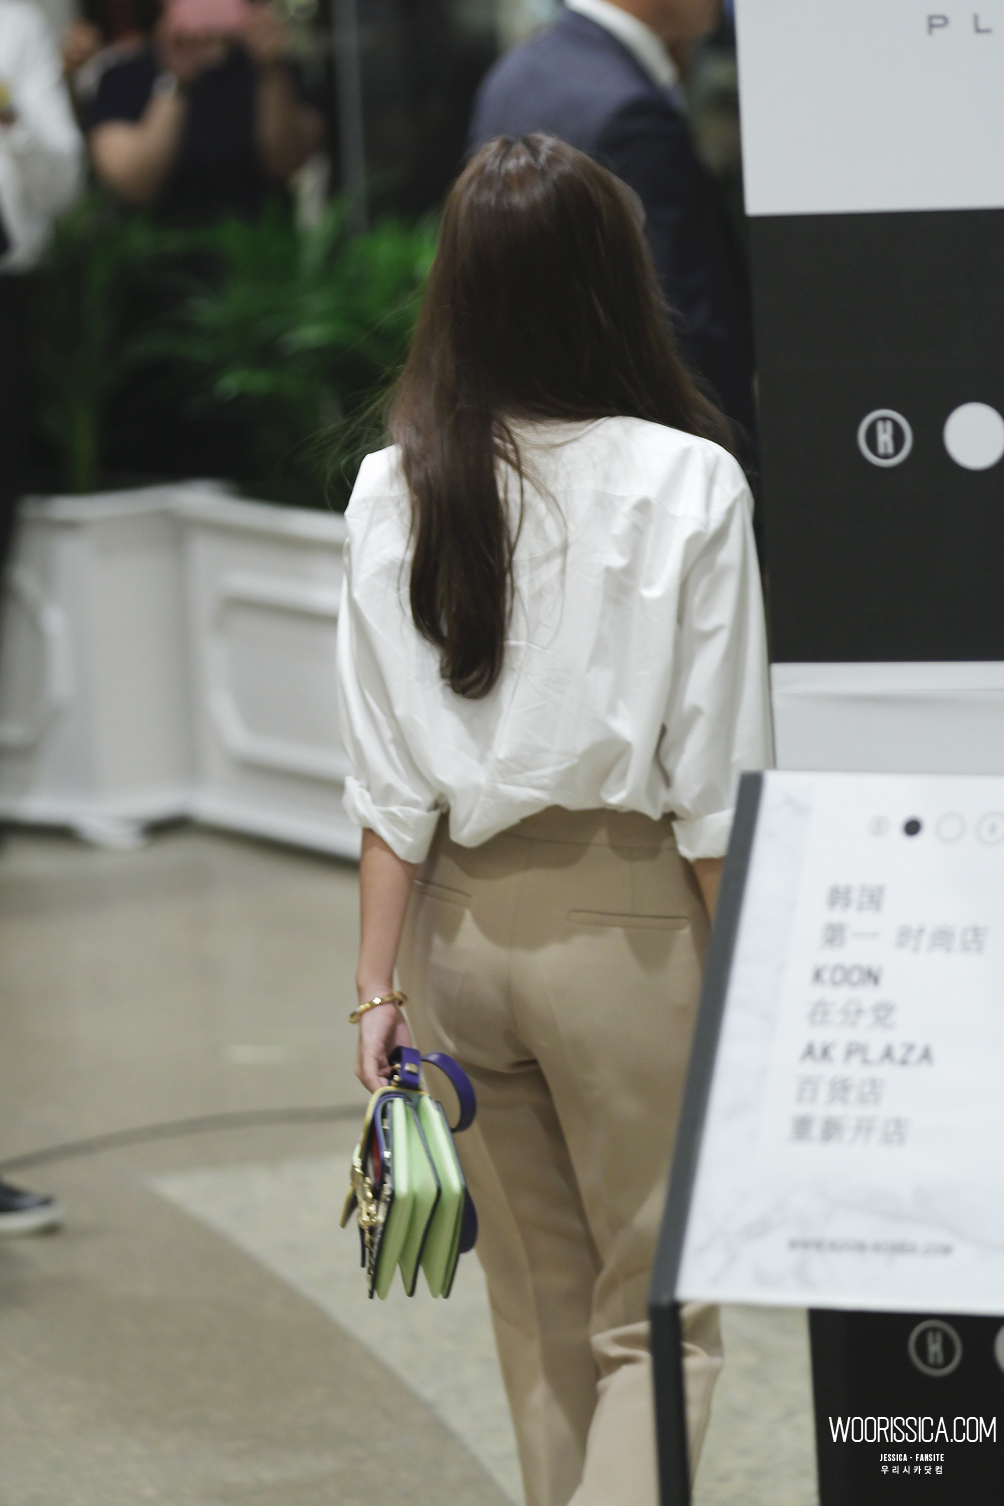 [PIC][21-08-2015]Jessica tham dự sự kiện khai trương hệ thống cửa hàng "KOON" vào chiều nay 2139124055F6D88F1C9461